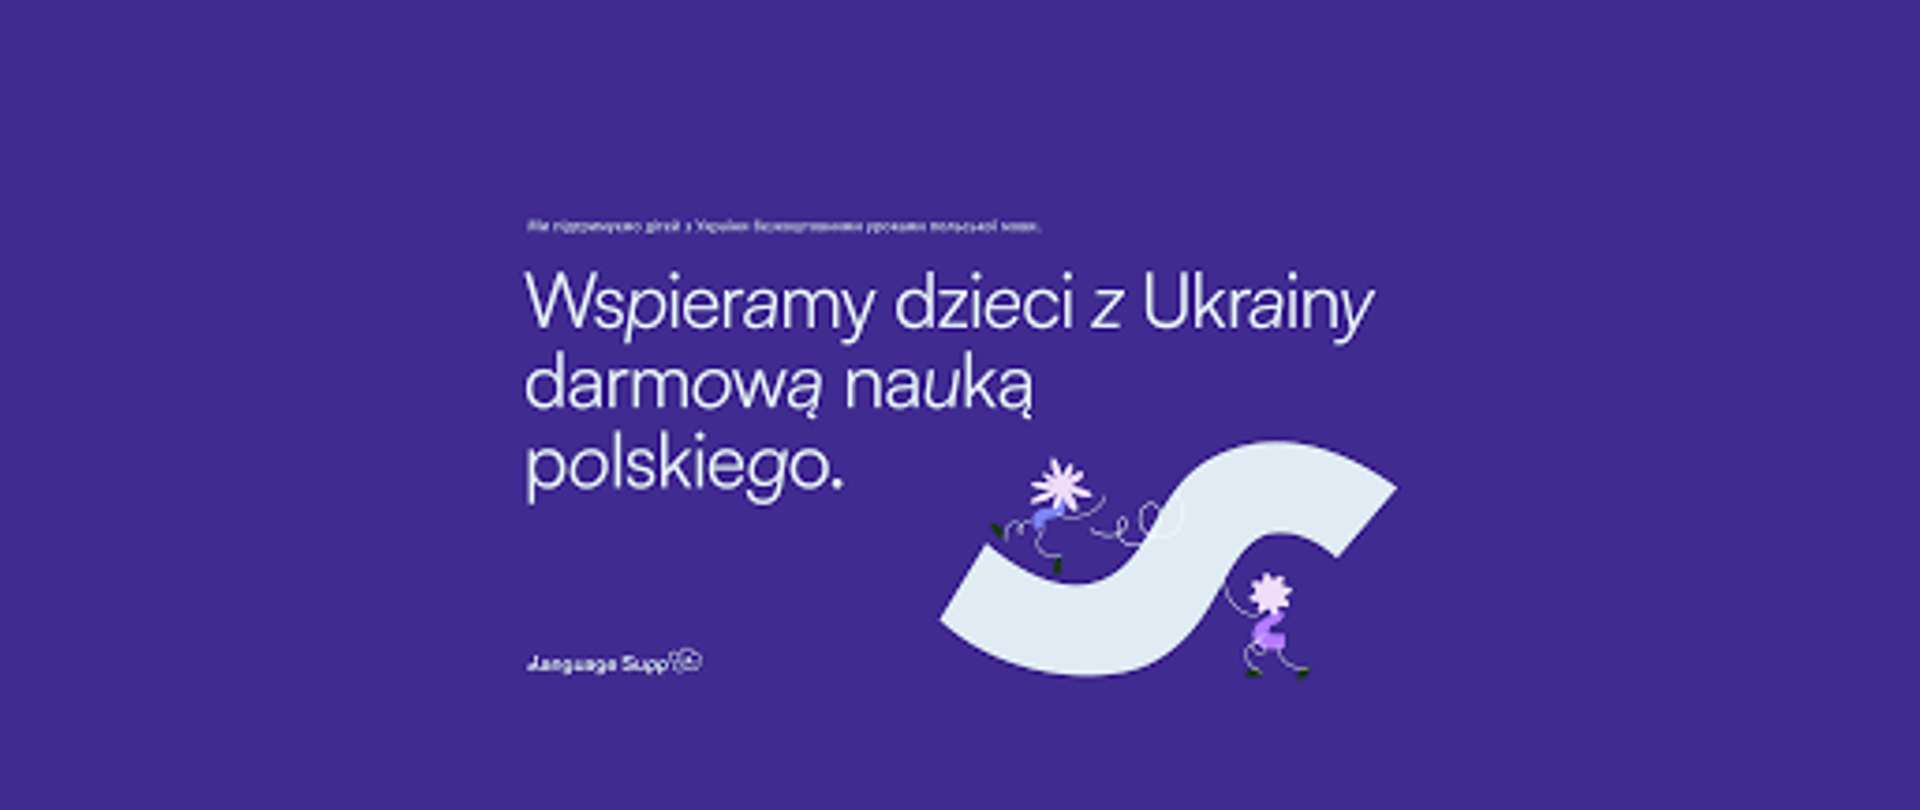 plakat z napisem Bezpłatna nauka polskiego online dla dzieci z Ukrainy